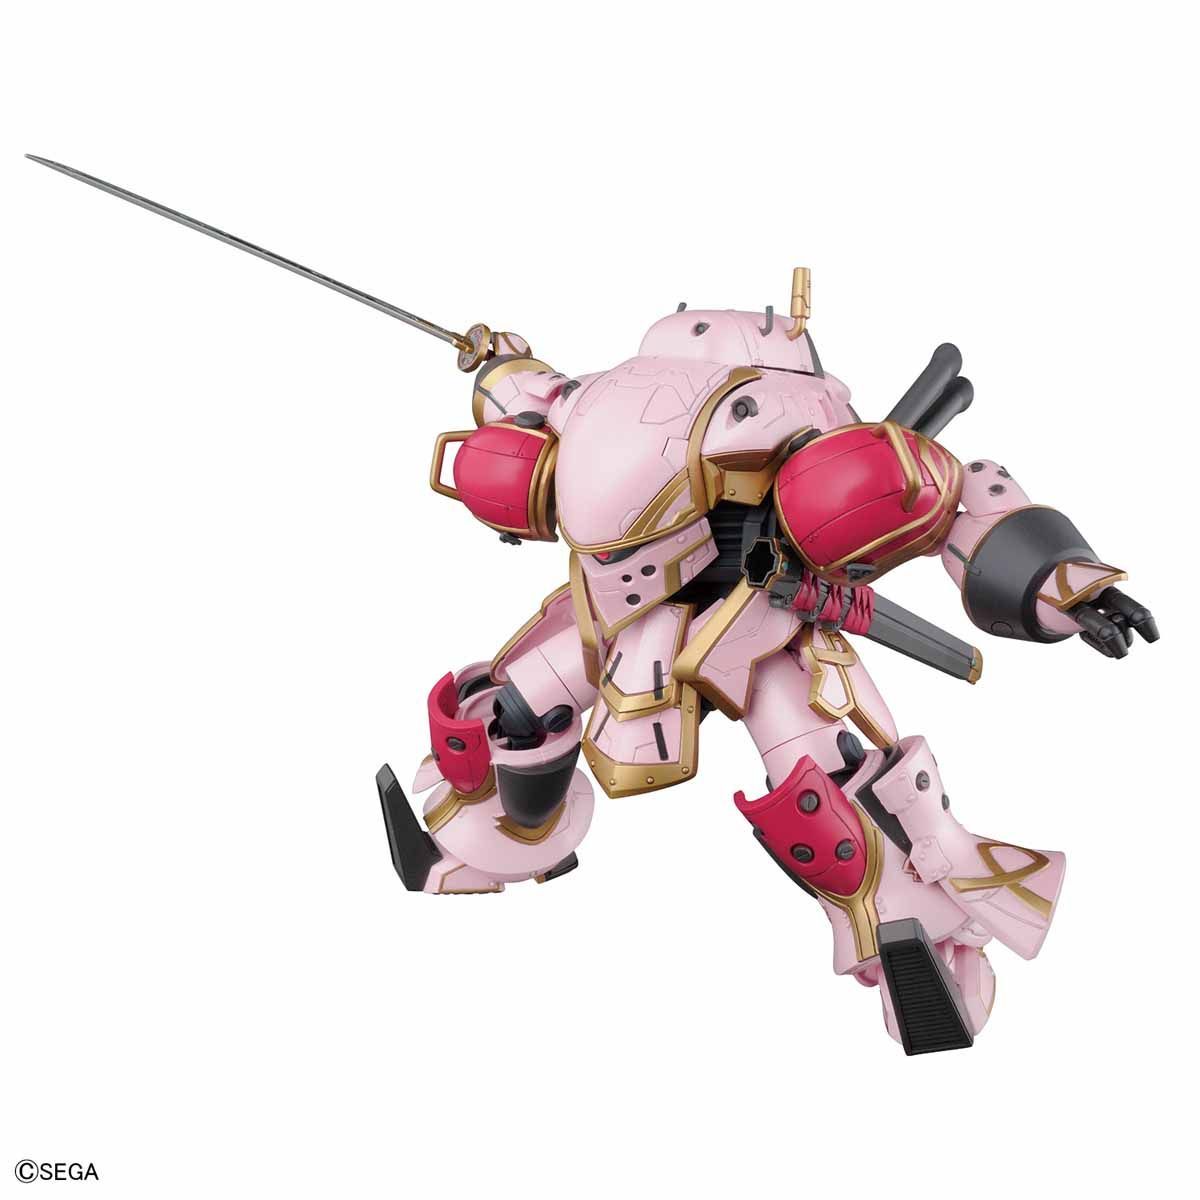 HG 1/24 Spiricle Striker Mugen (Tenmiya Sakura Type) - Project Sakura Wars - Glacier Hobbies - Bandai